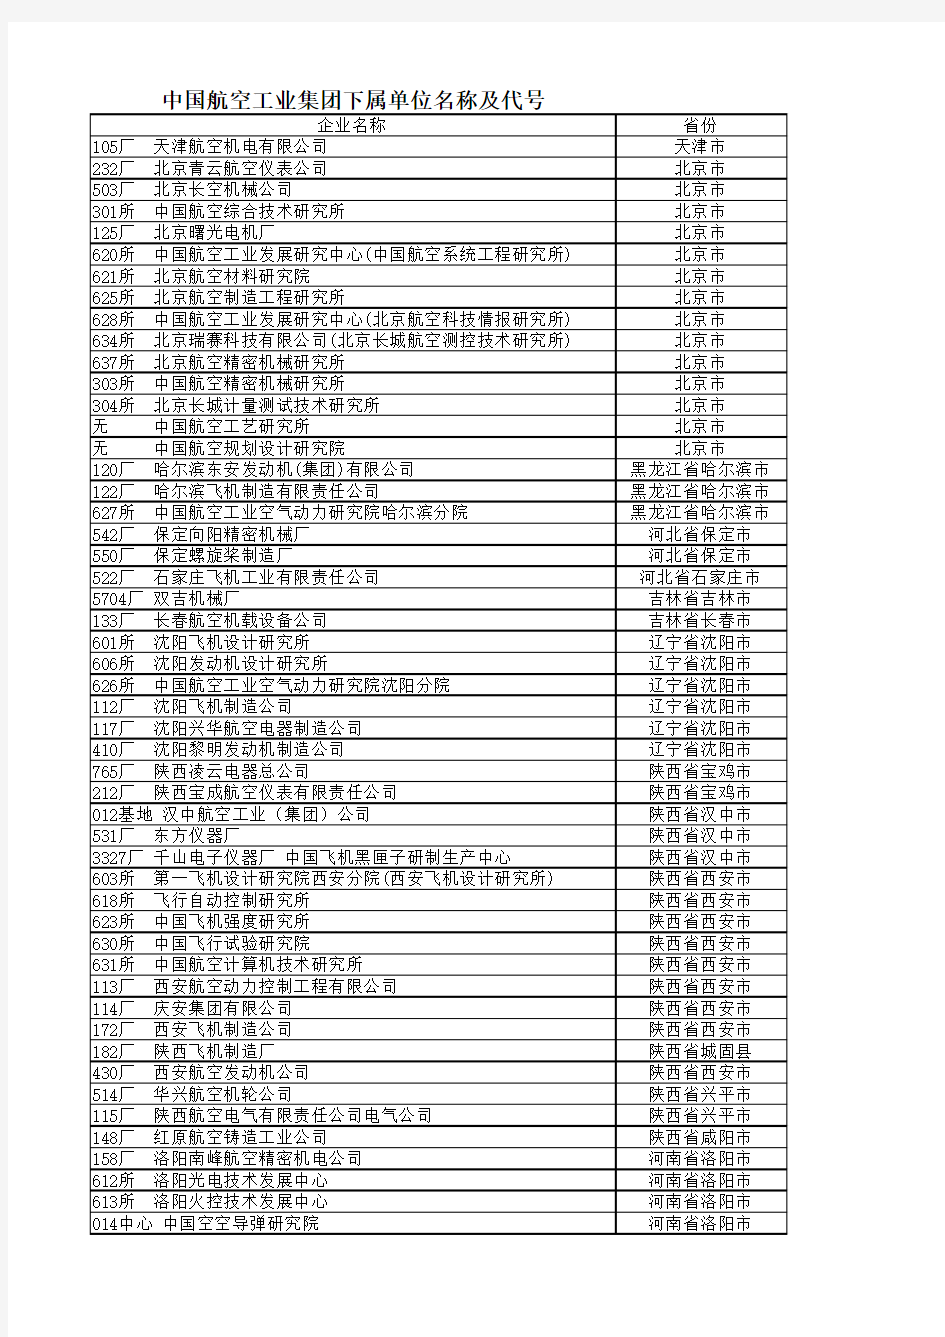 中航工业集团下属企业一览表 含代码 